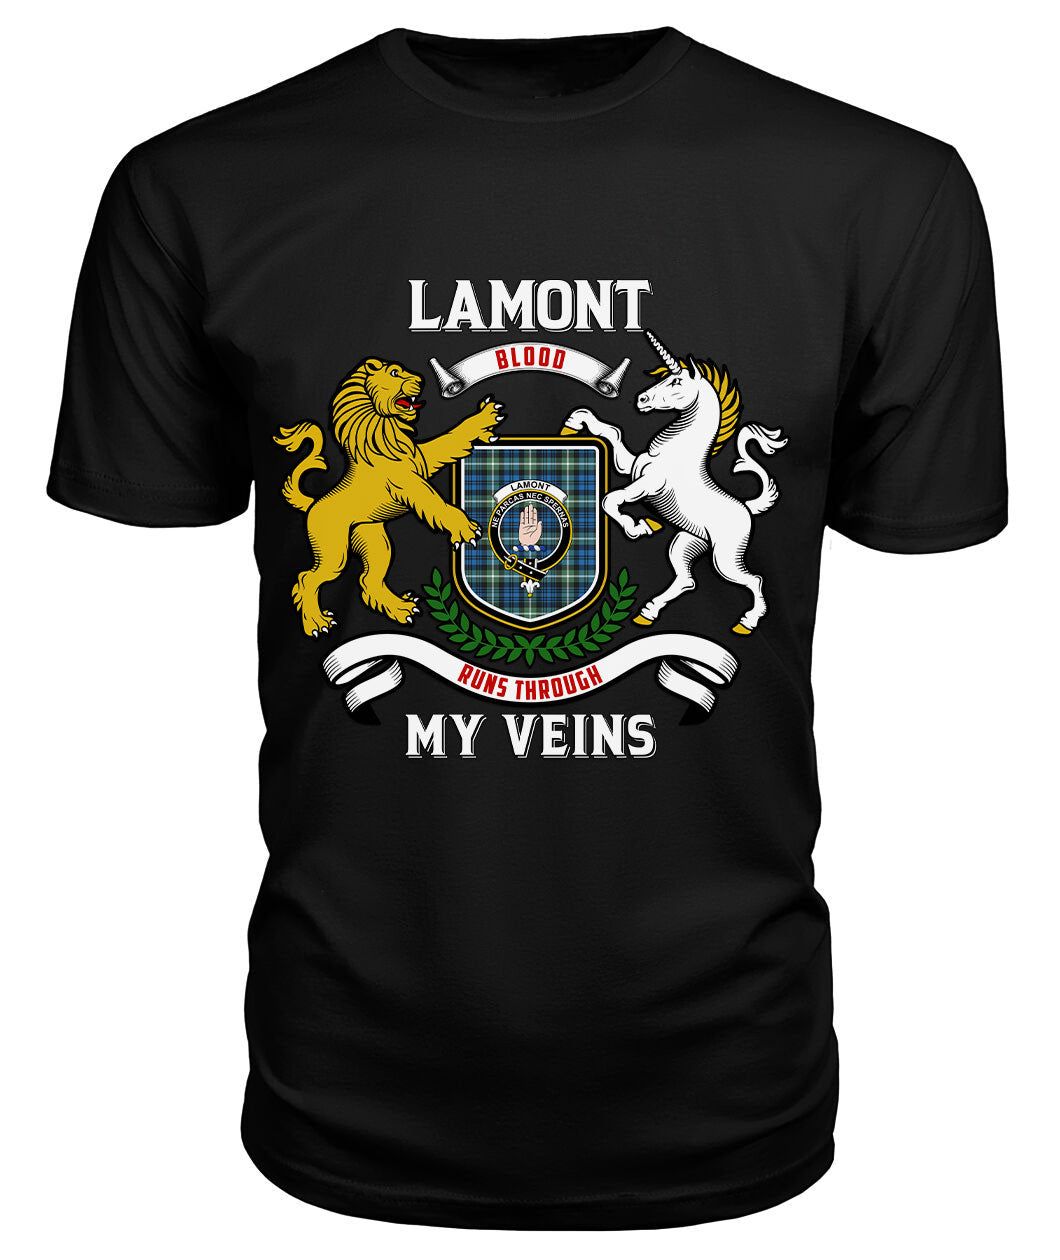 Lamont Ancient Tartan Crest 2D T-shirt - Blood Runs Through My Veins Style